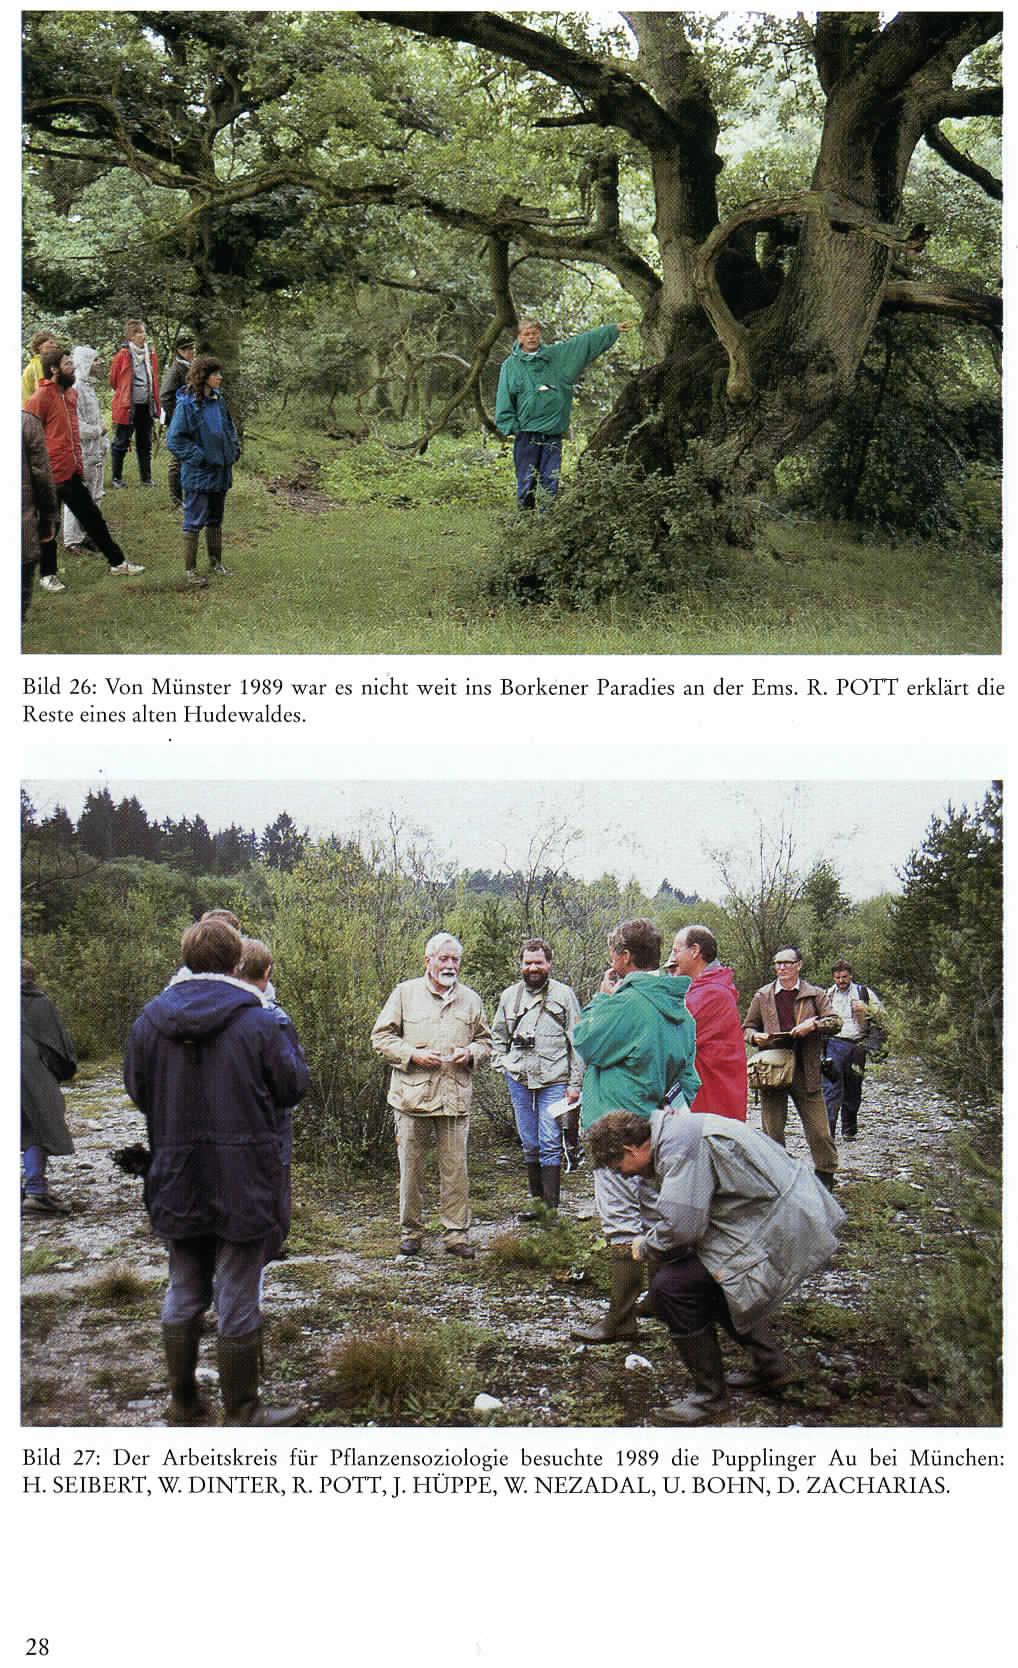 Bild 26: Von Münster 1989 war es nicht weit ins Borkener Paradies an der Ems. R. POTT erklärt die Reste emes alten Hudewaldes.